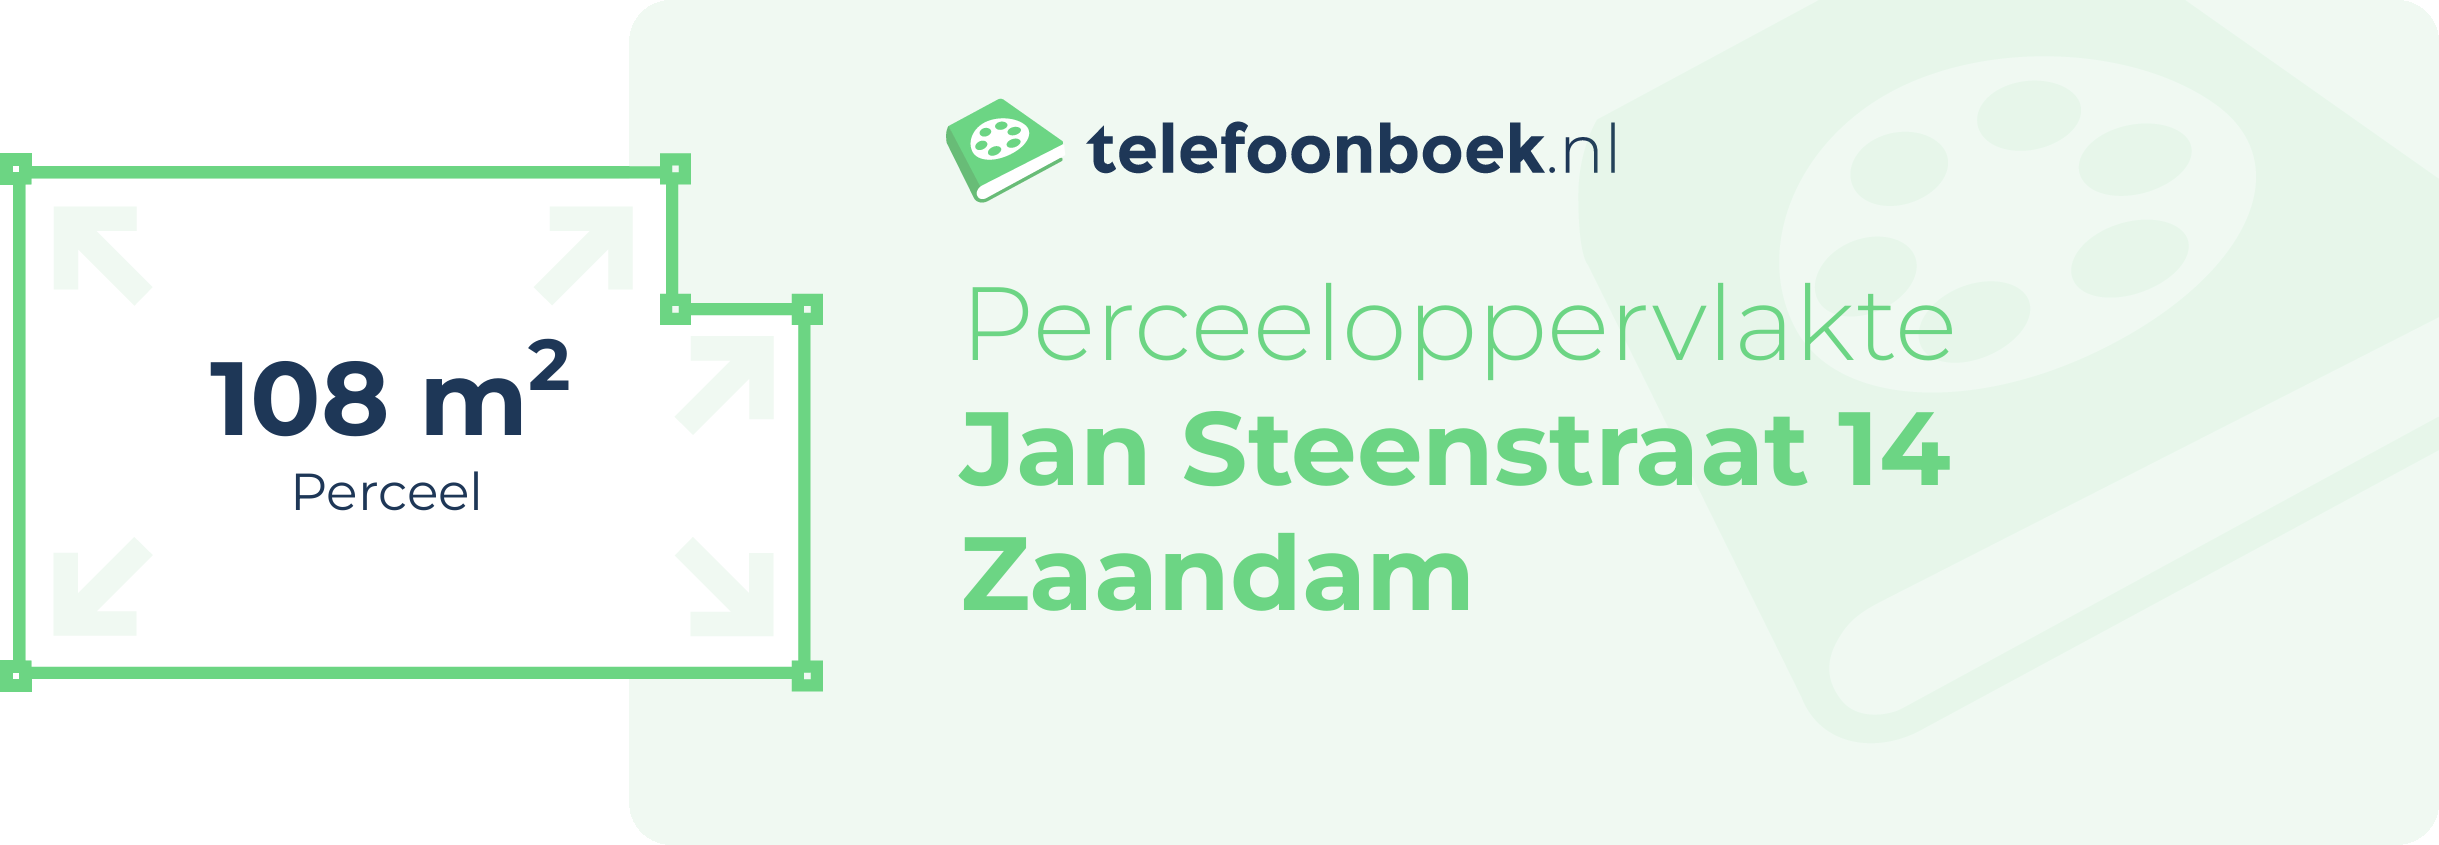 Perceeloppervlakte Jan Steenstraat 14 Zaandam